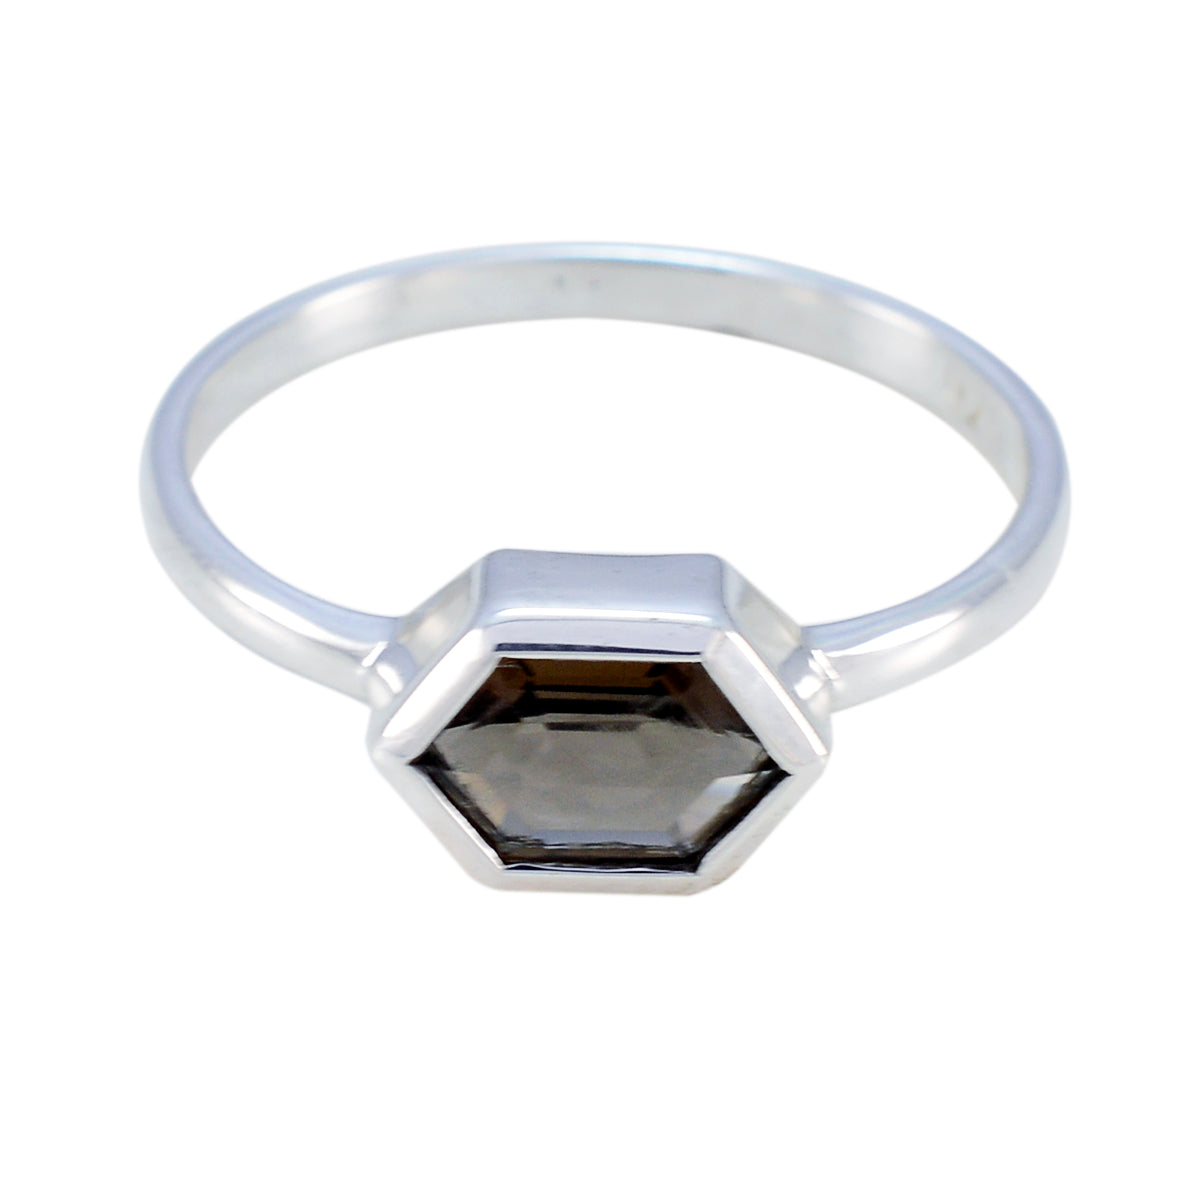 великолепный камень дымчатый кварц твердое серебряное кольцо ювелирные магазины онлайн